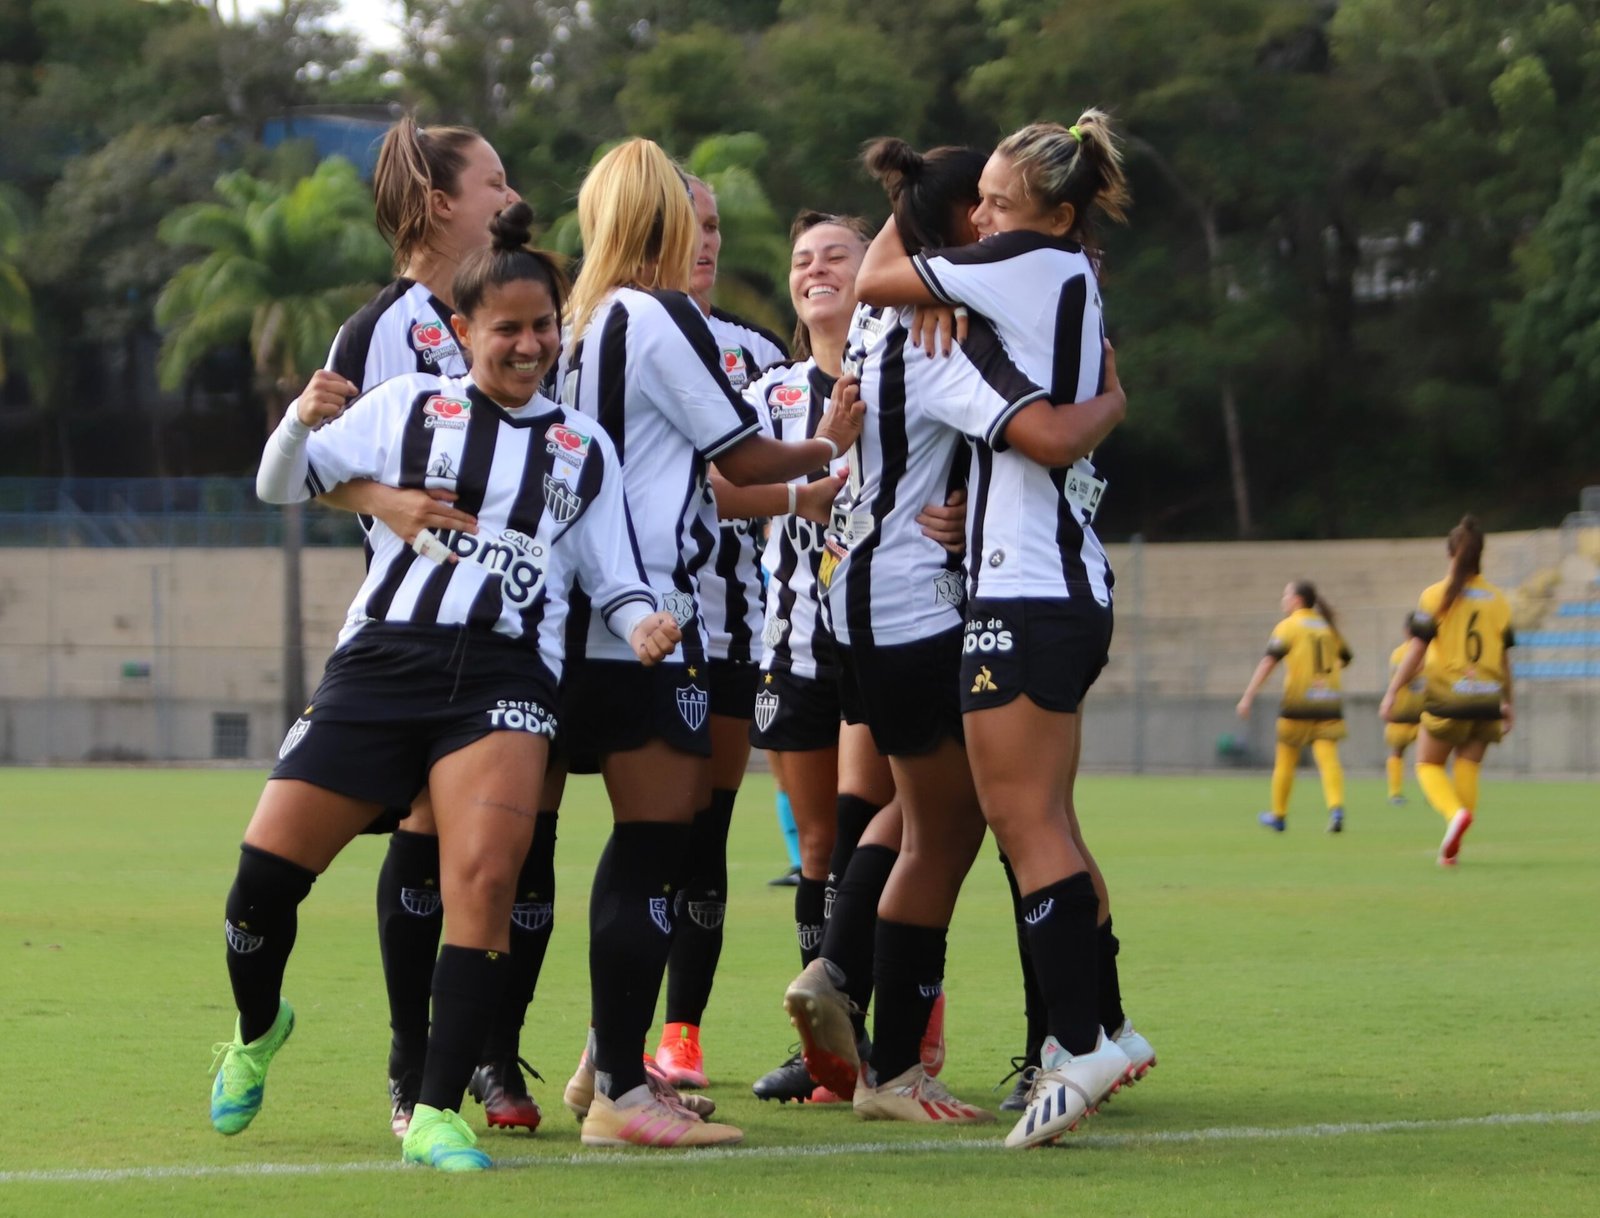 Ceará começa bem a Série A2 do Brasileirão Feminino e goleira Thais Helena  destaca: 'O trabalho segue forte' - 24/06/2022 - UOL Esporte